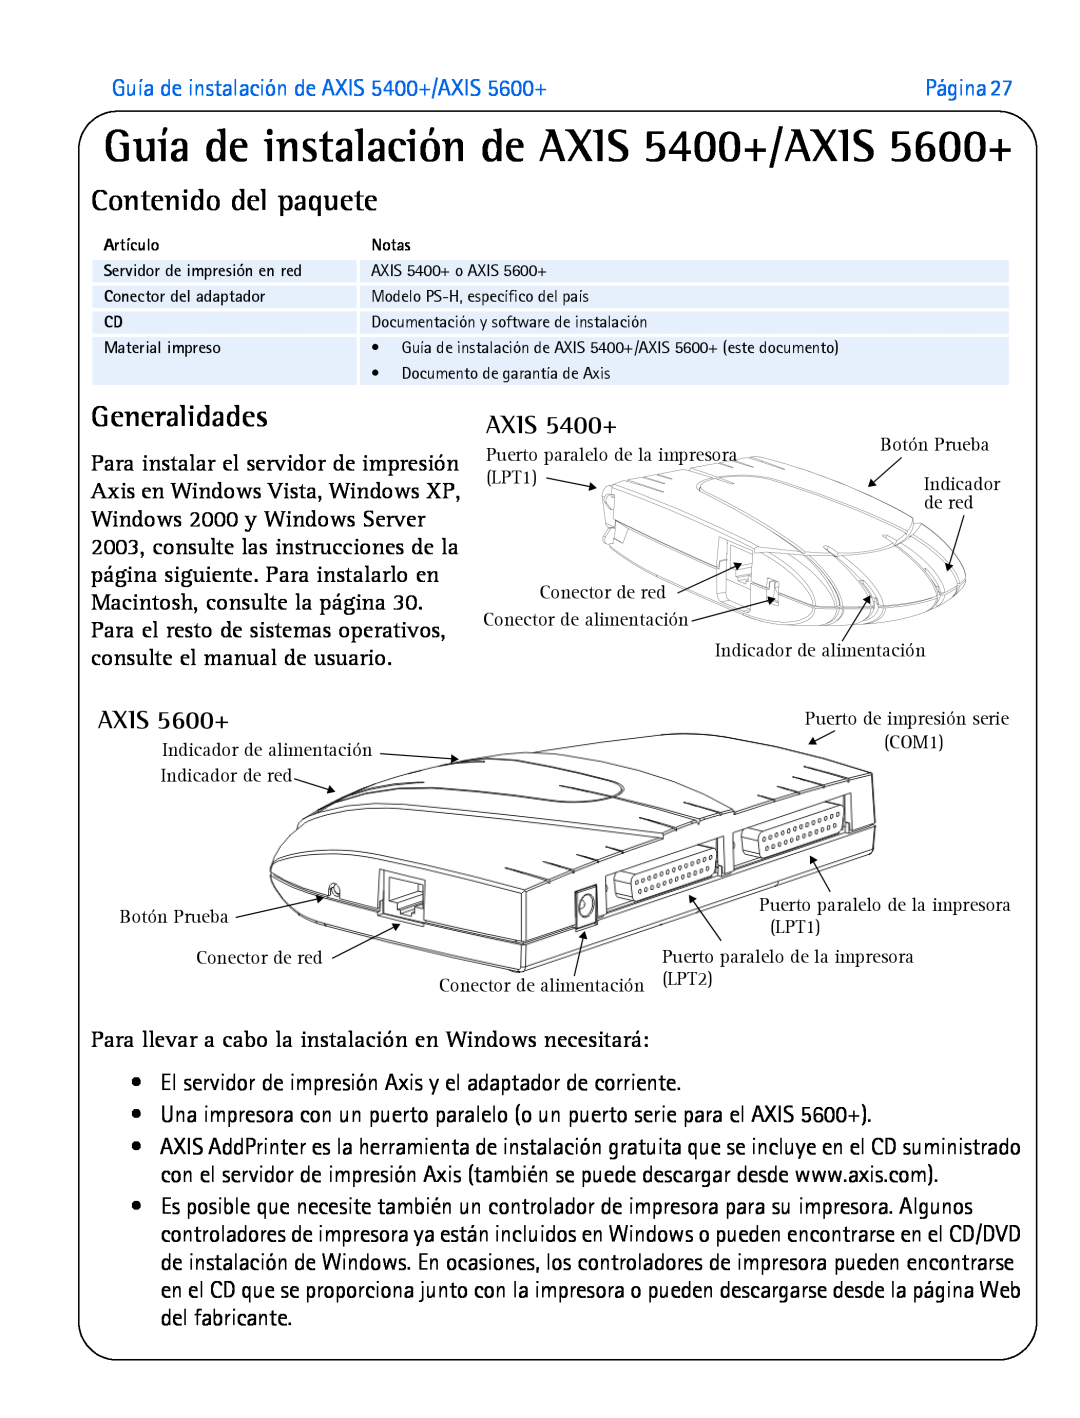 Axis Communications manual Guía de instalación de AXIS 5400+/AXIS 5600+, Contenido del paquete, Generalidades 